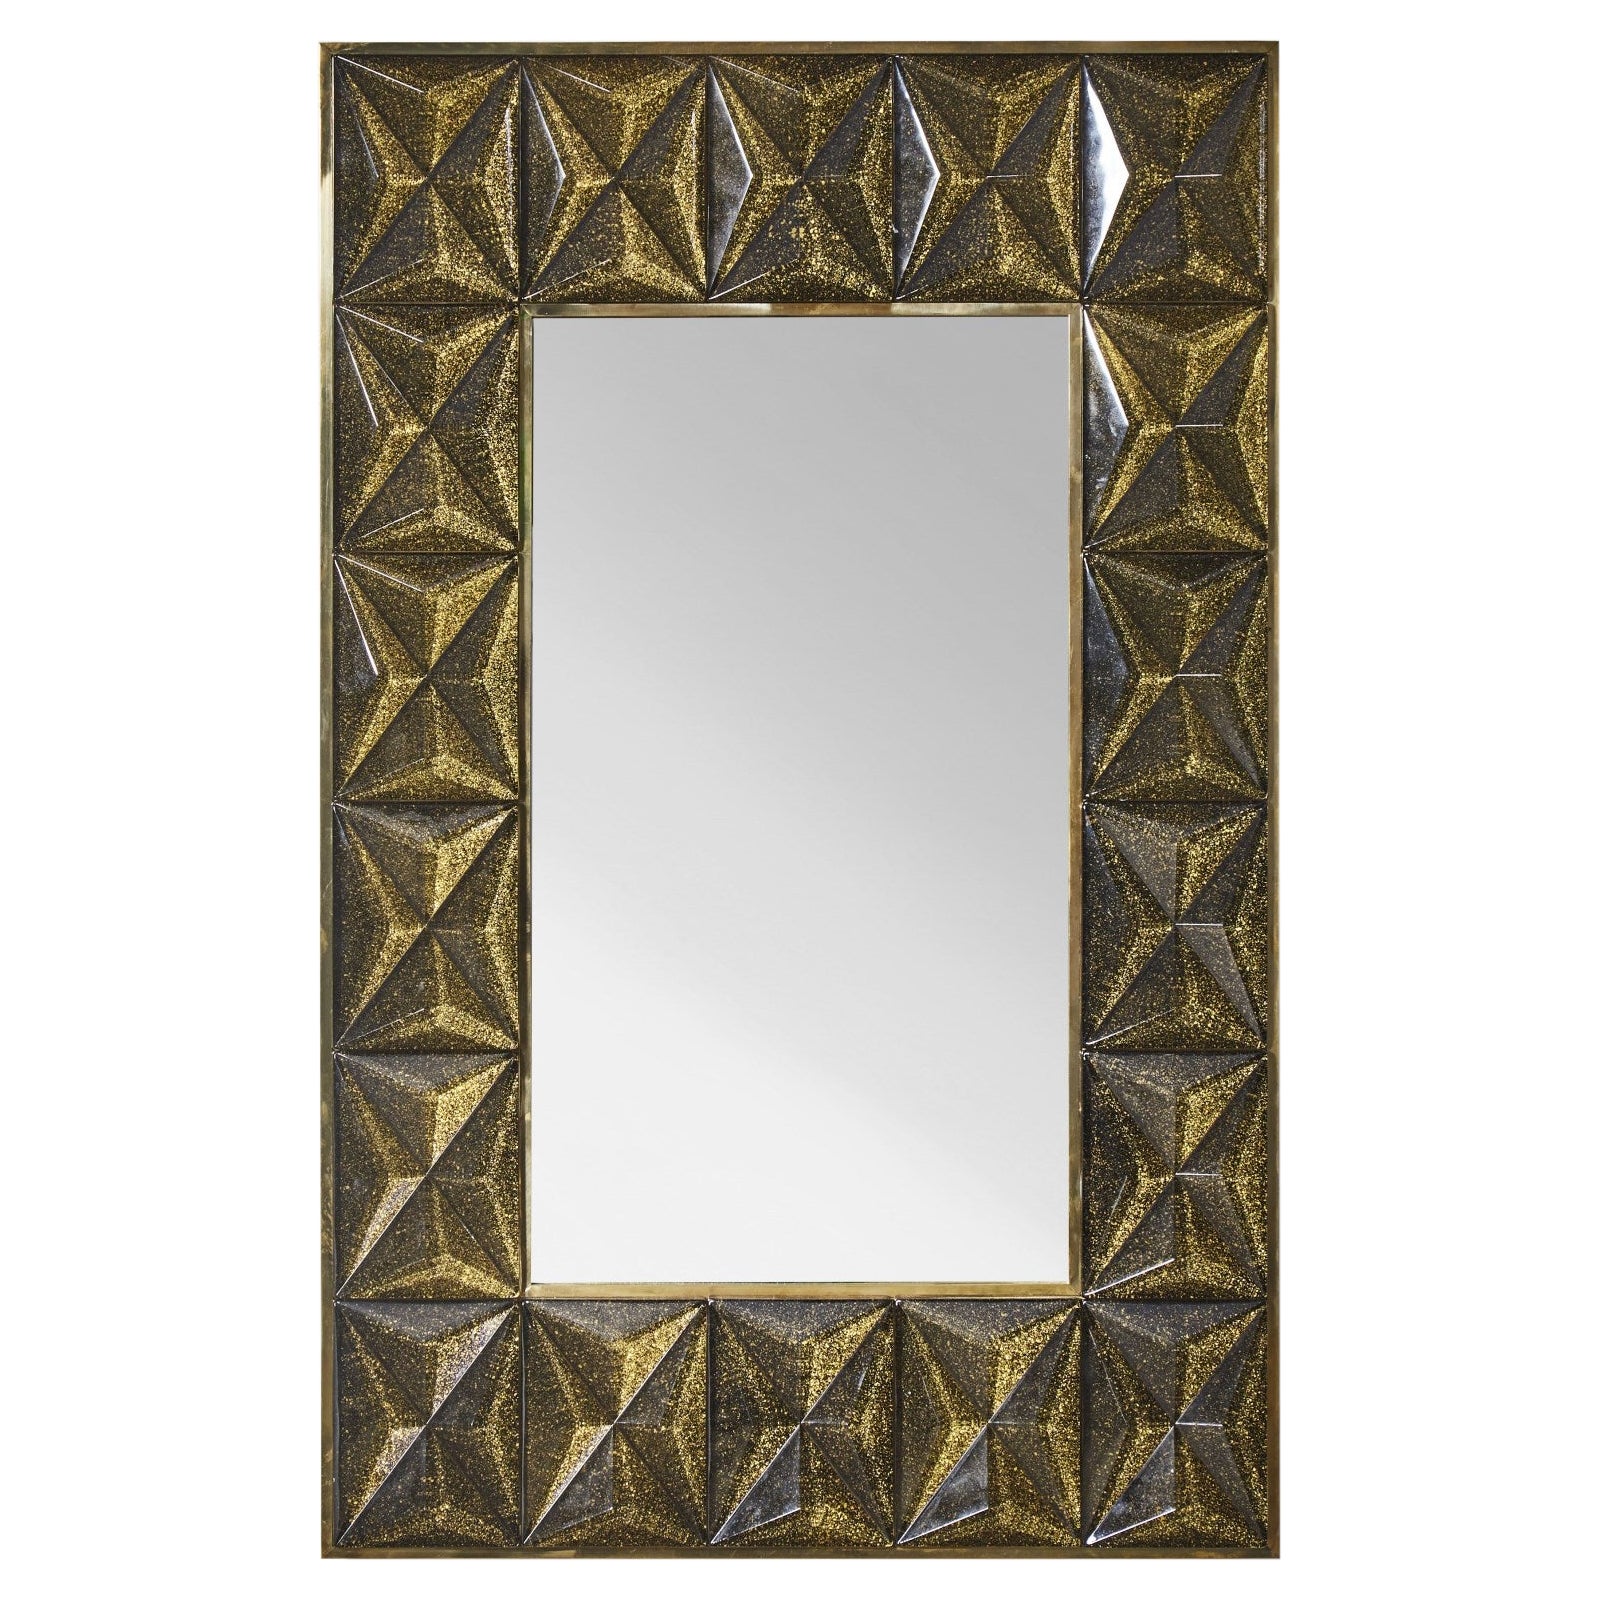 Spiegel "Diamant" aus Murano-Glas von Studio Glustin